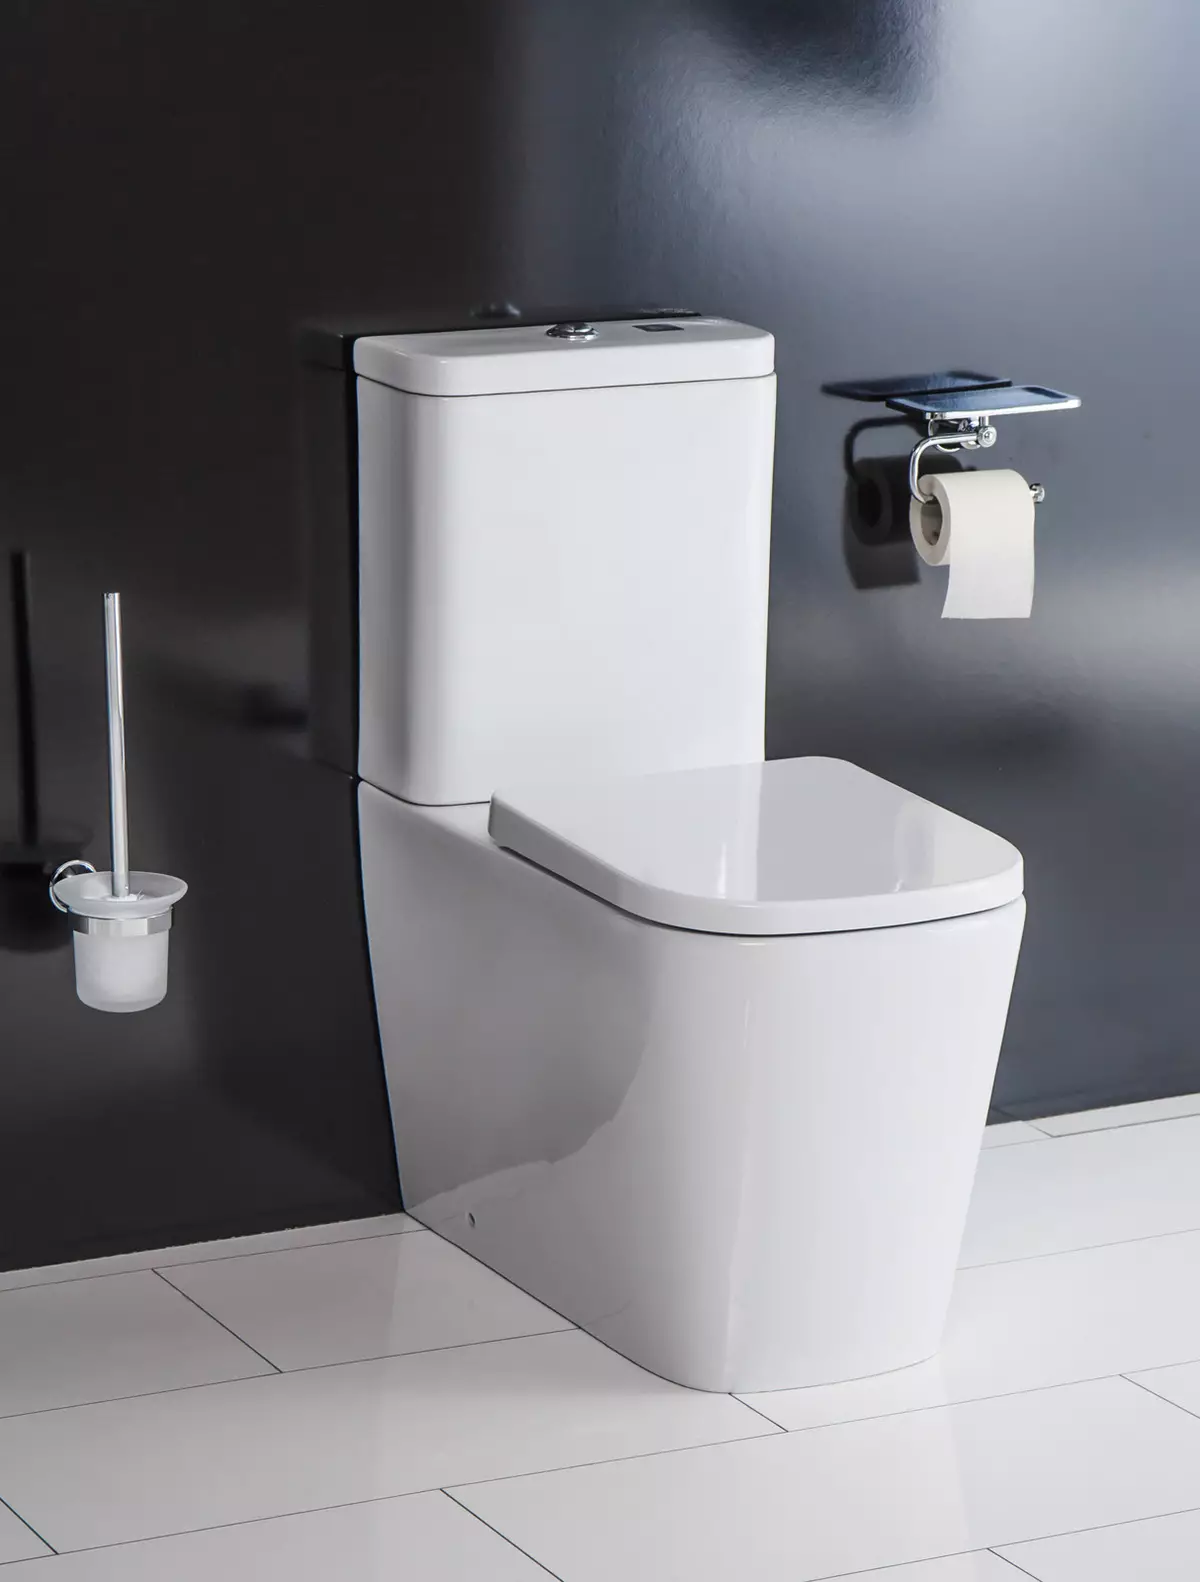 توالت کف بدون بی حوصل: کدام مدل بدون لبه بهتر است؟ انتخاب یک توالت توالت با یک مخزن و بدون آن، از پرسلن یا سفال. امتیاز 10533_12